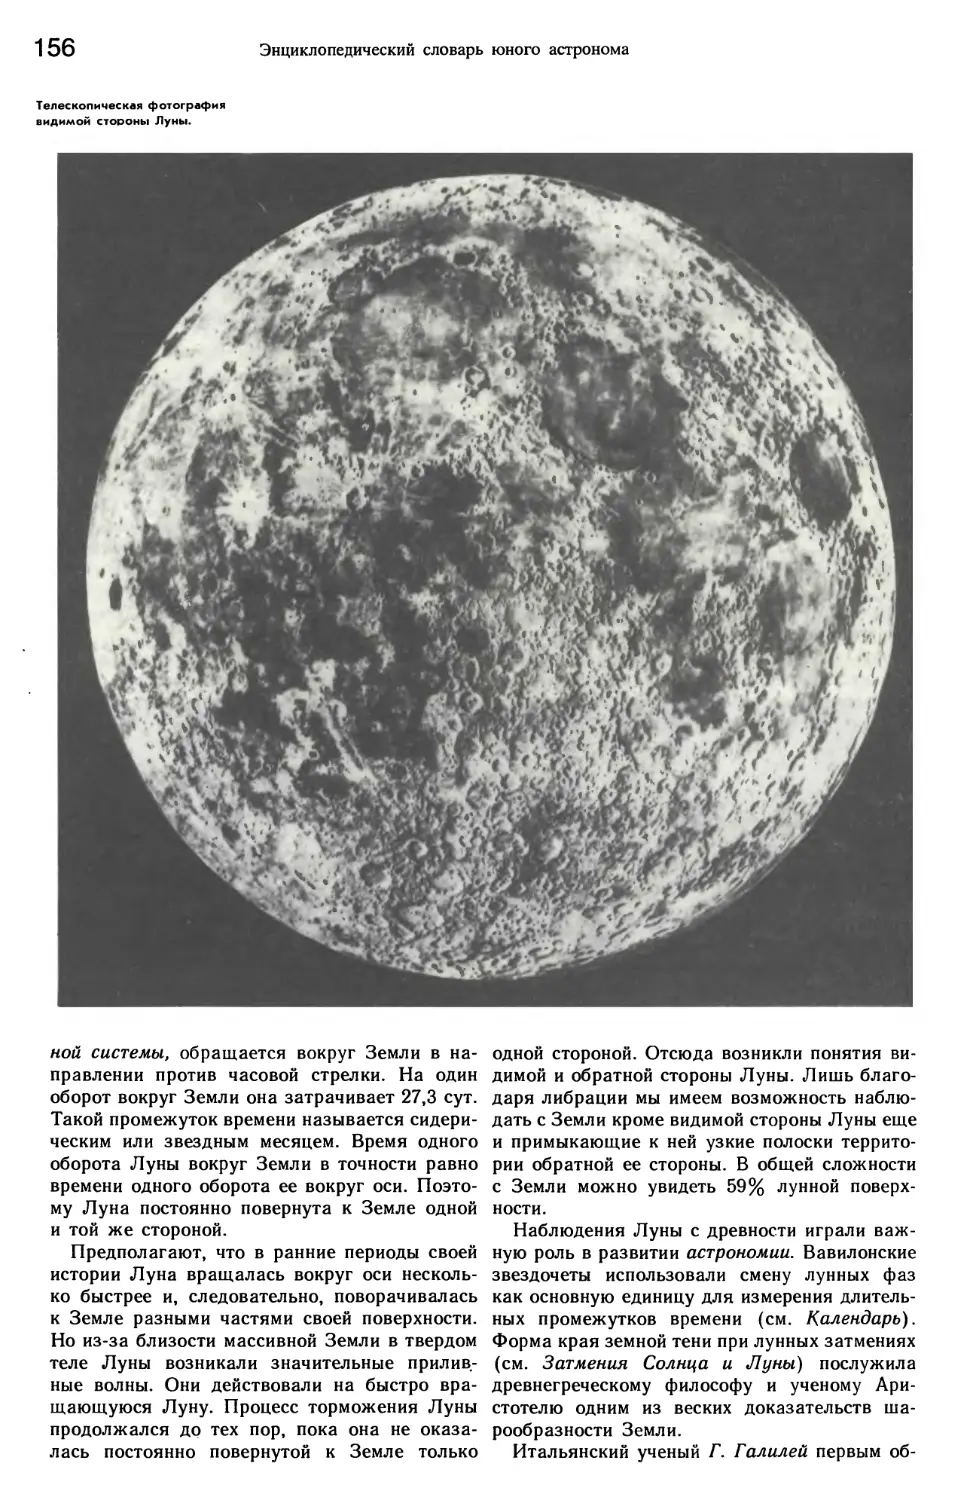 Карта невидимой стороны Луны